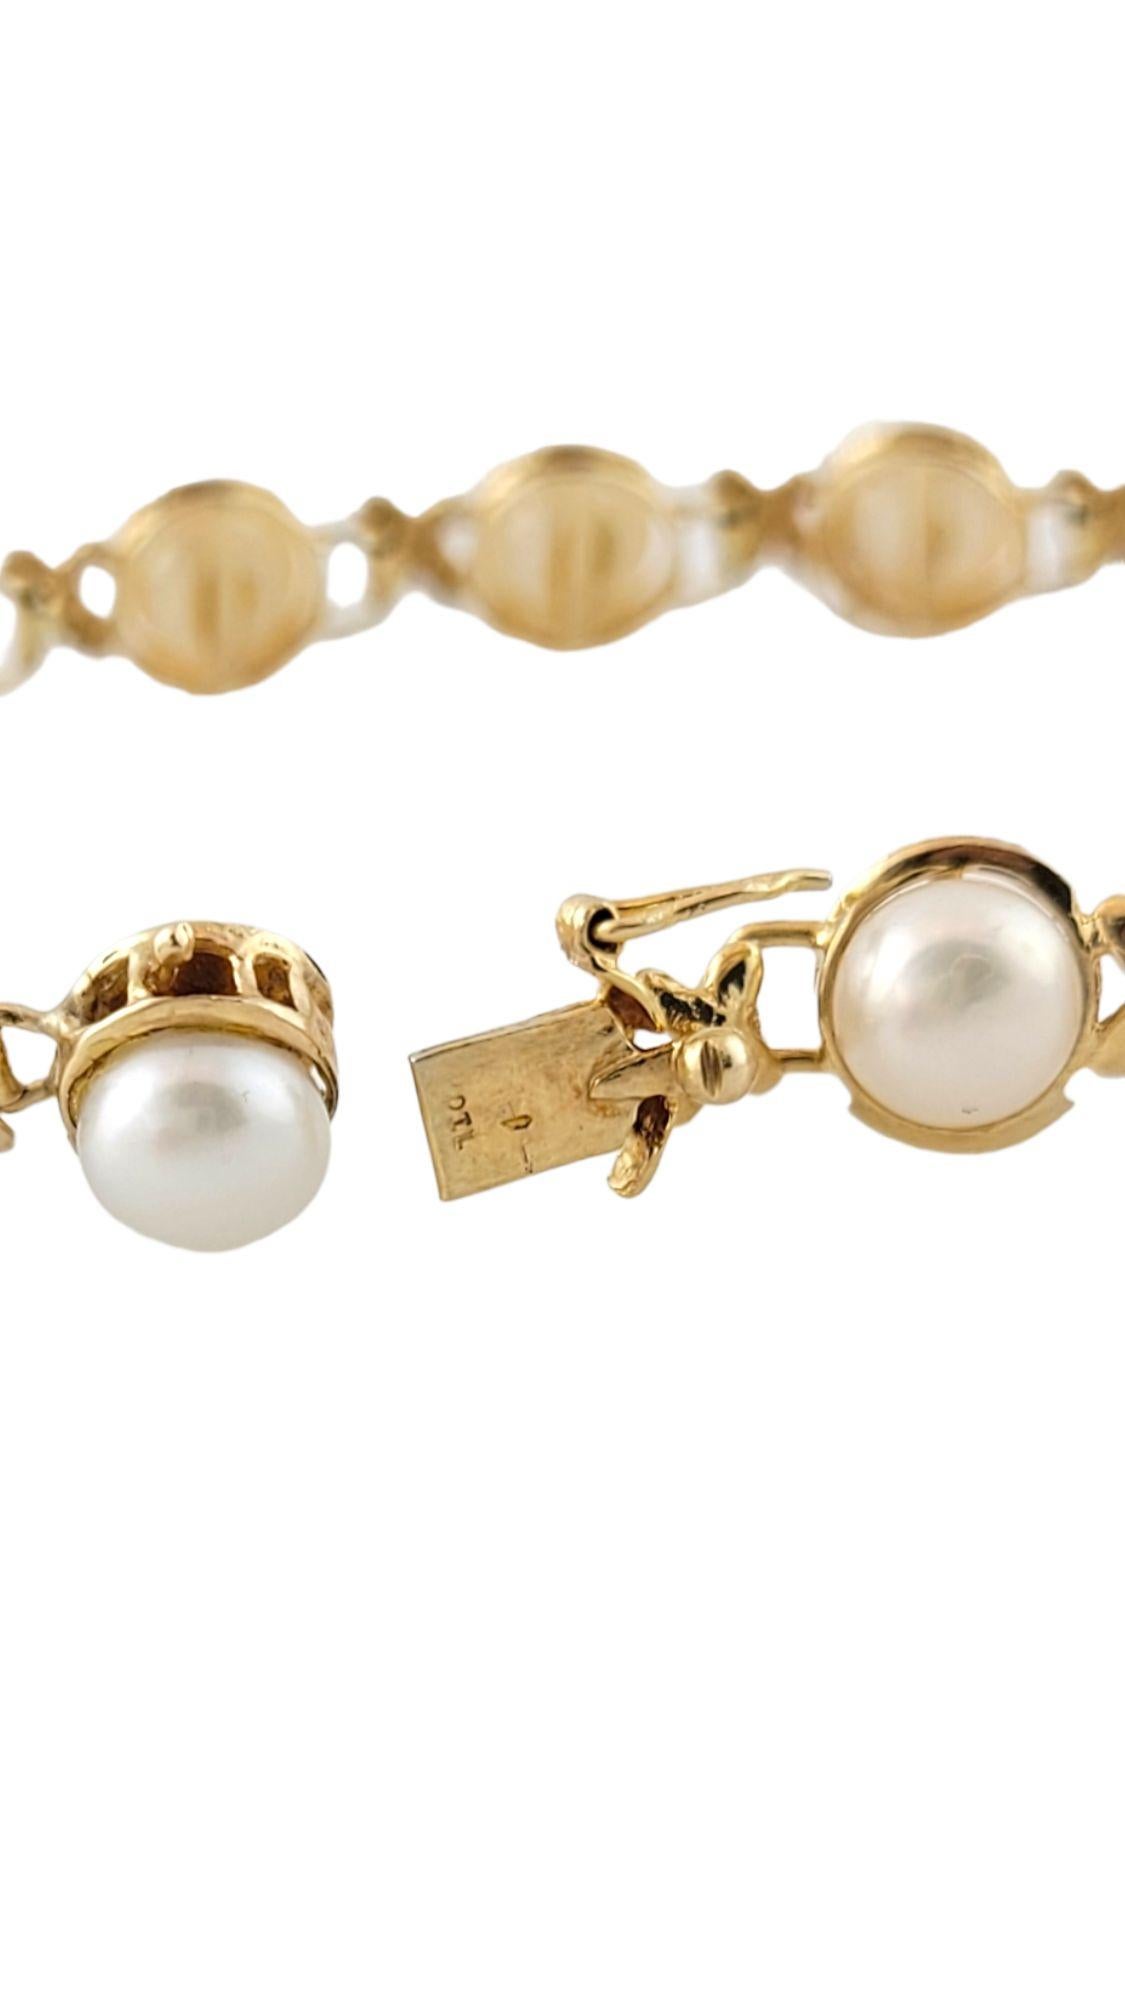 Women's 14K Yellow Gold Freshwater Pearl Bracelet #14472